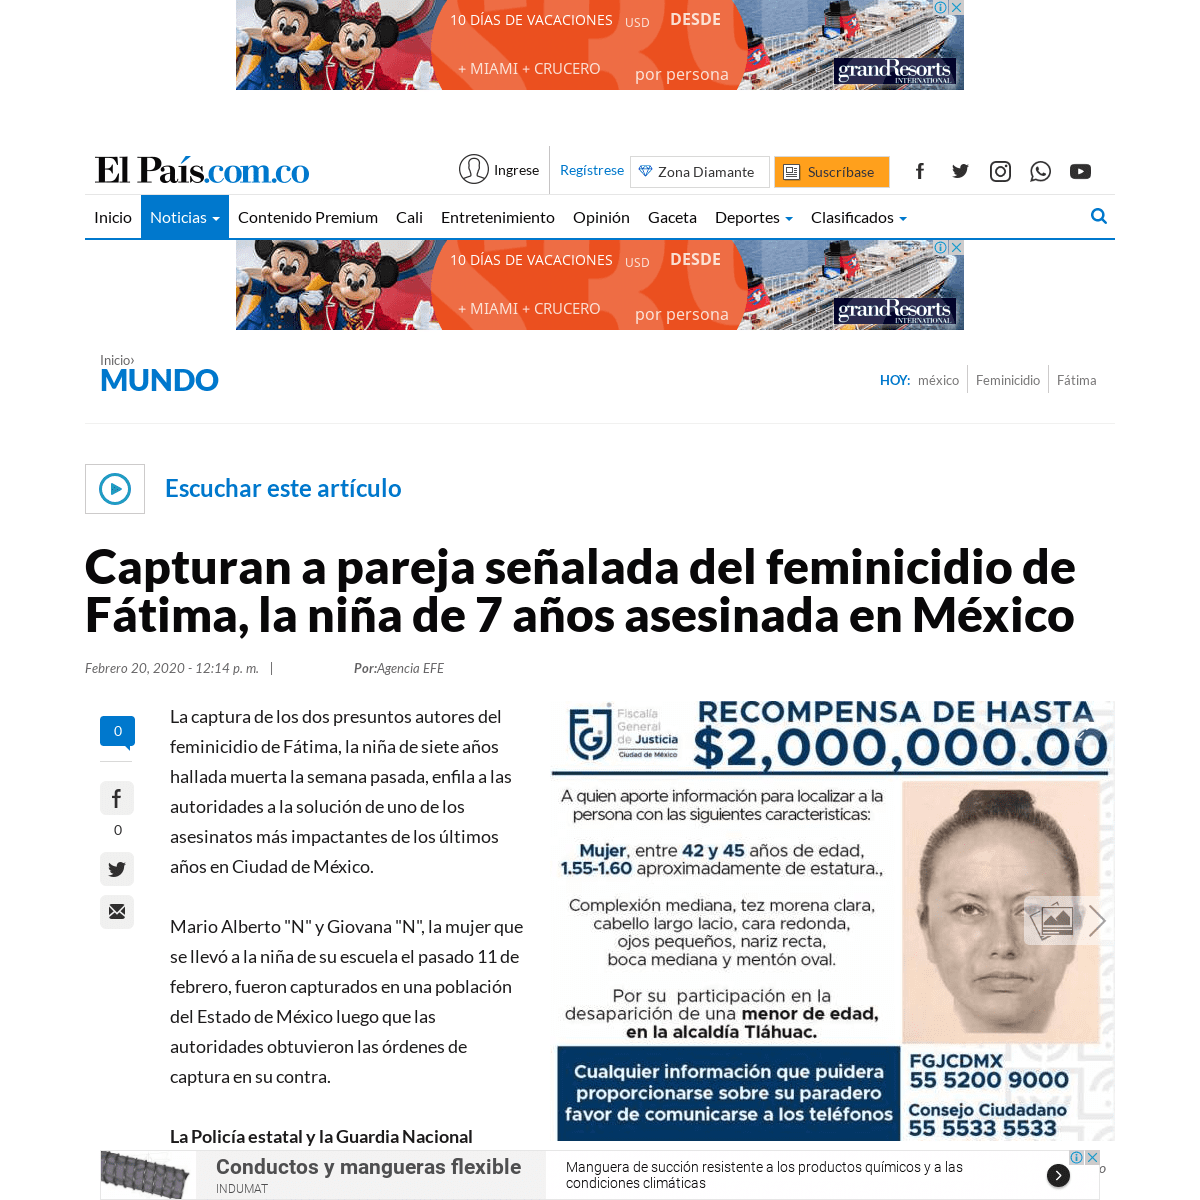 A complete backup of www.elpais.com.co/mundo/capturan-a-pareja-senalada-del-feminicidio-de-fatima-la-nina-de-7-anos-asesinada-en